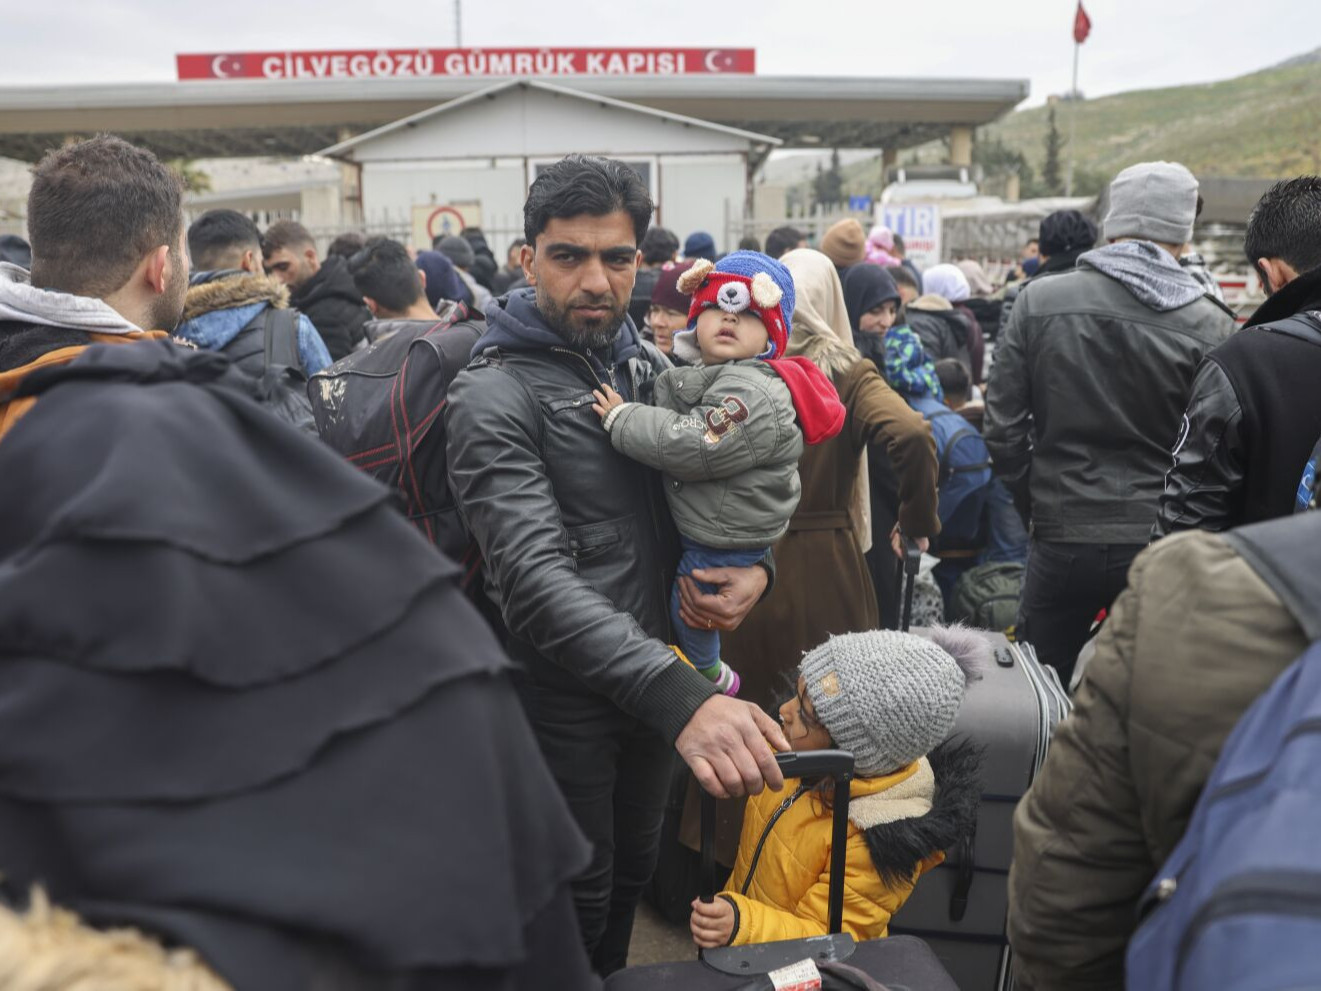 Турк, Сирид болсон газар хөдлөлтөөс хойш иргэдэд сэтгэл зүйн тусламж хэрэгцээтэй байгаа талаар мэдээлжээ